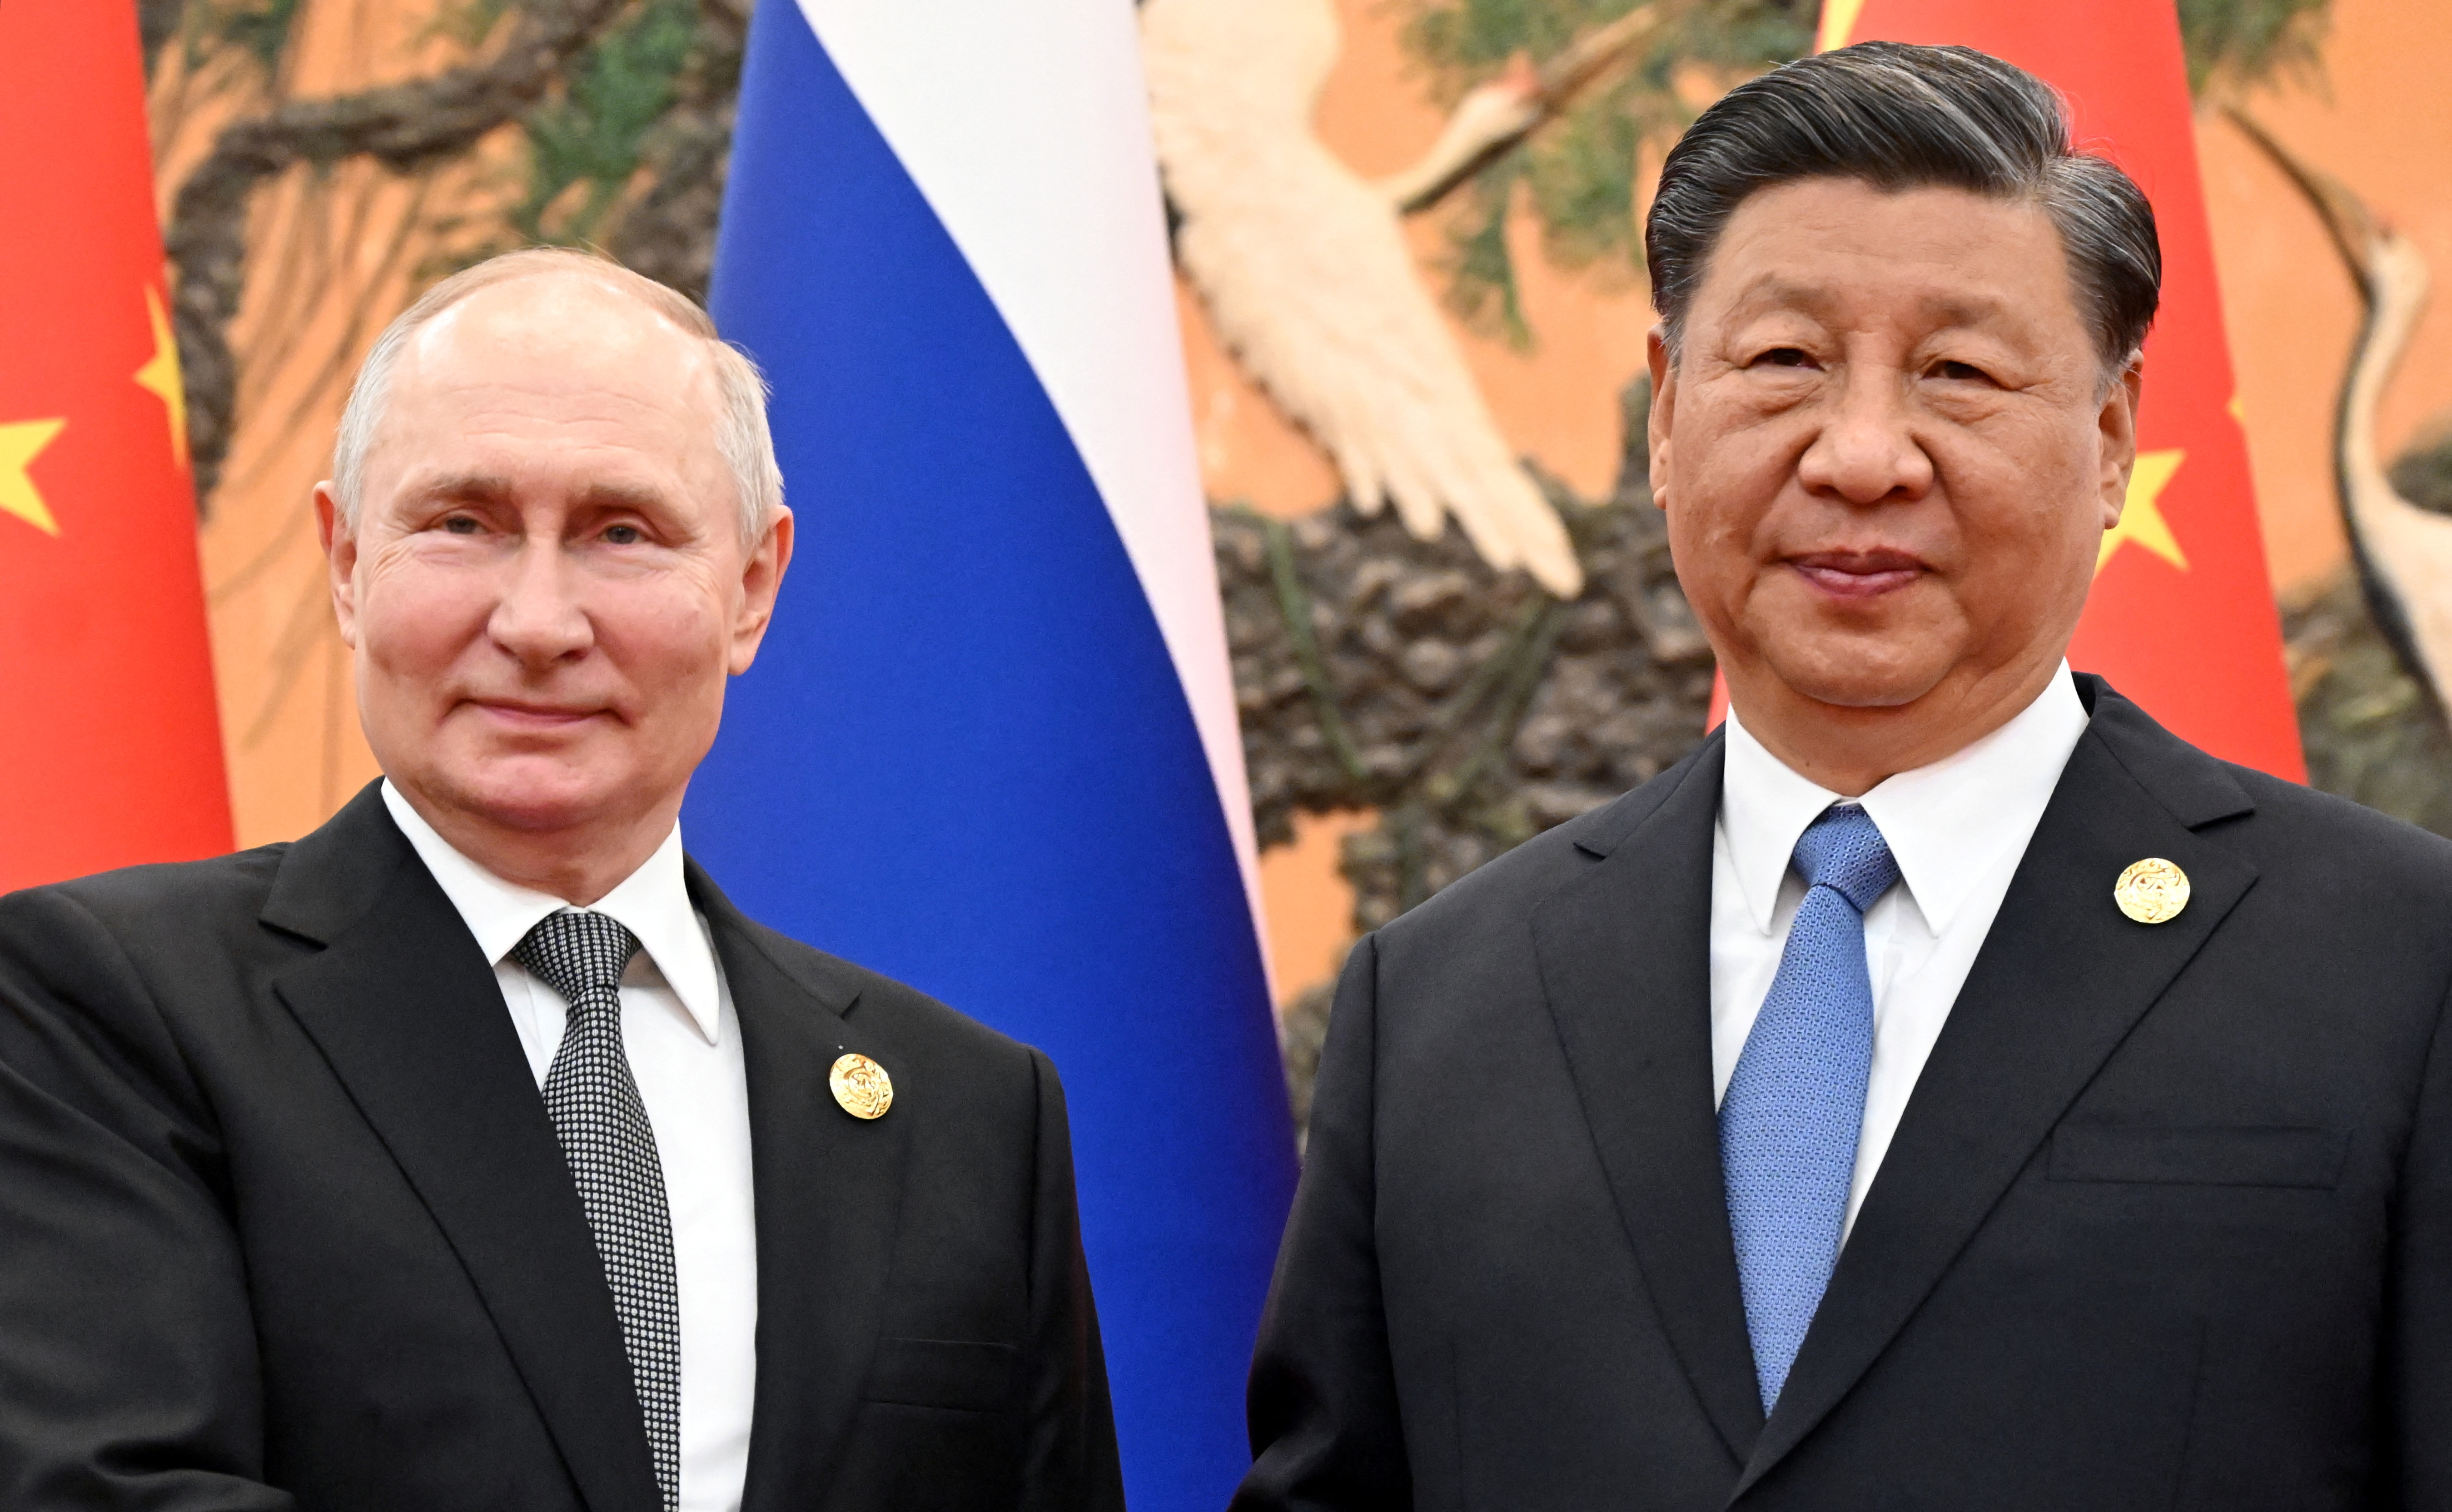 Des responsables américains détaillent l'aide militaire de la Chine à la Russie en Ukraine